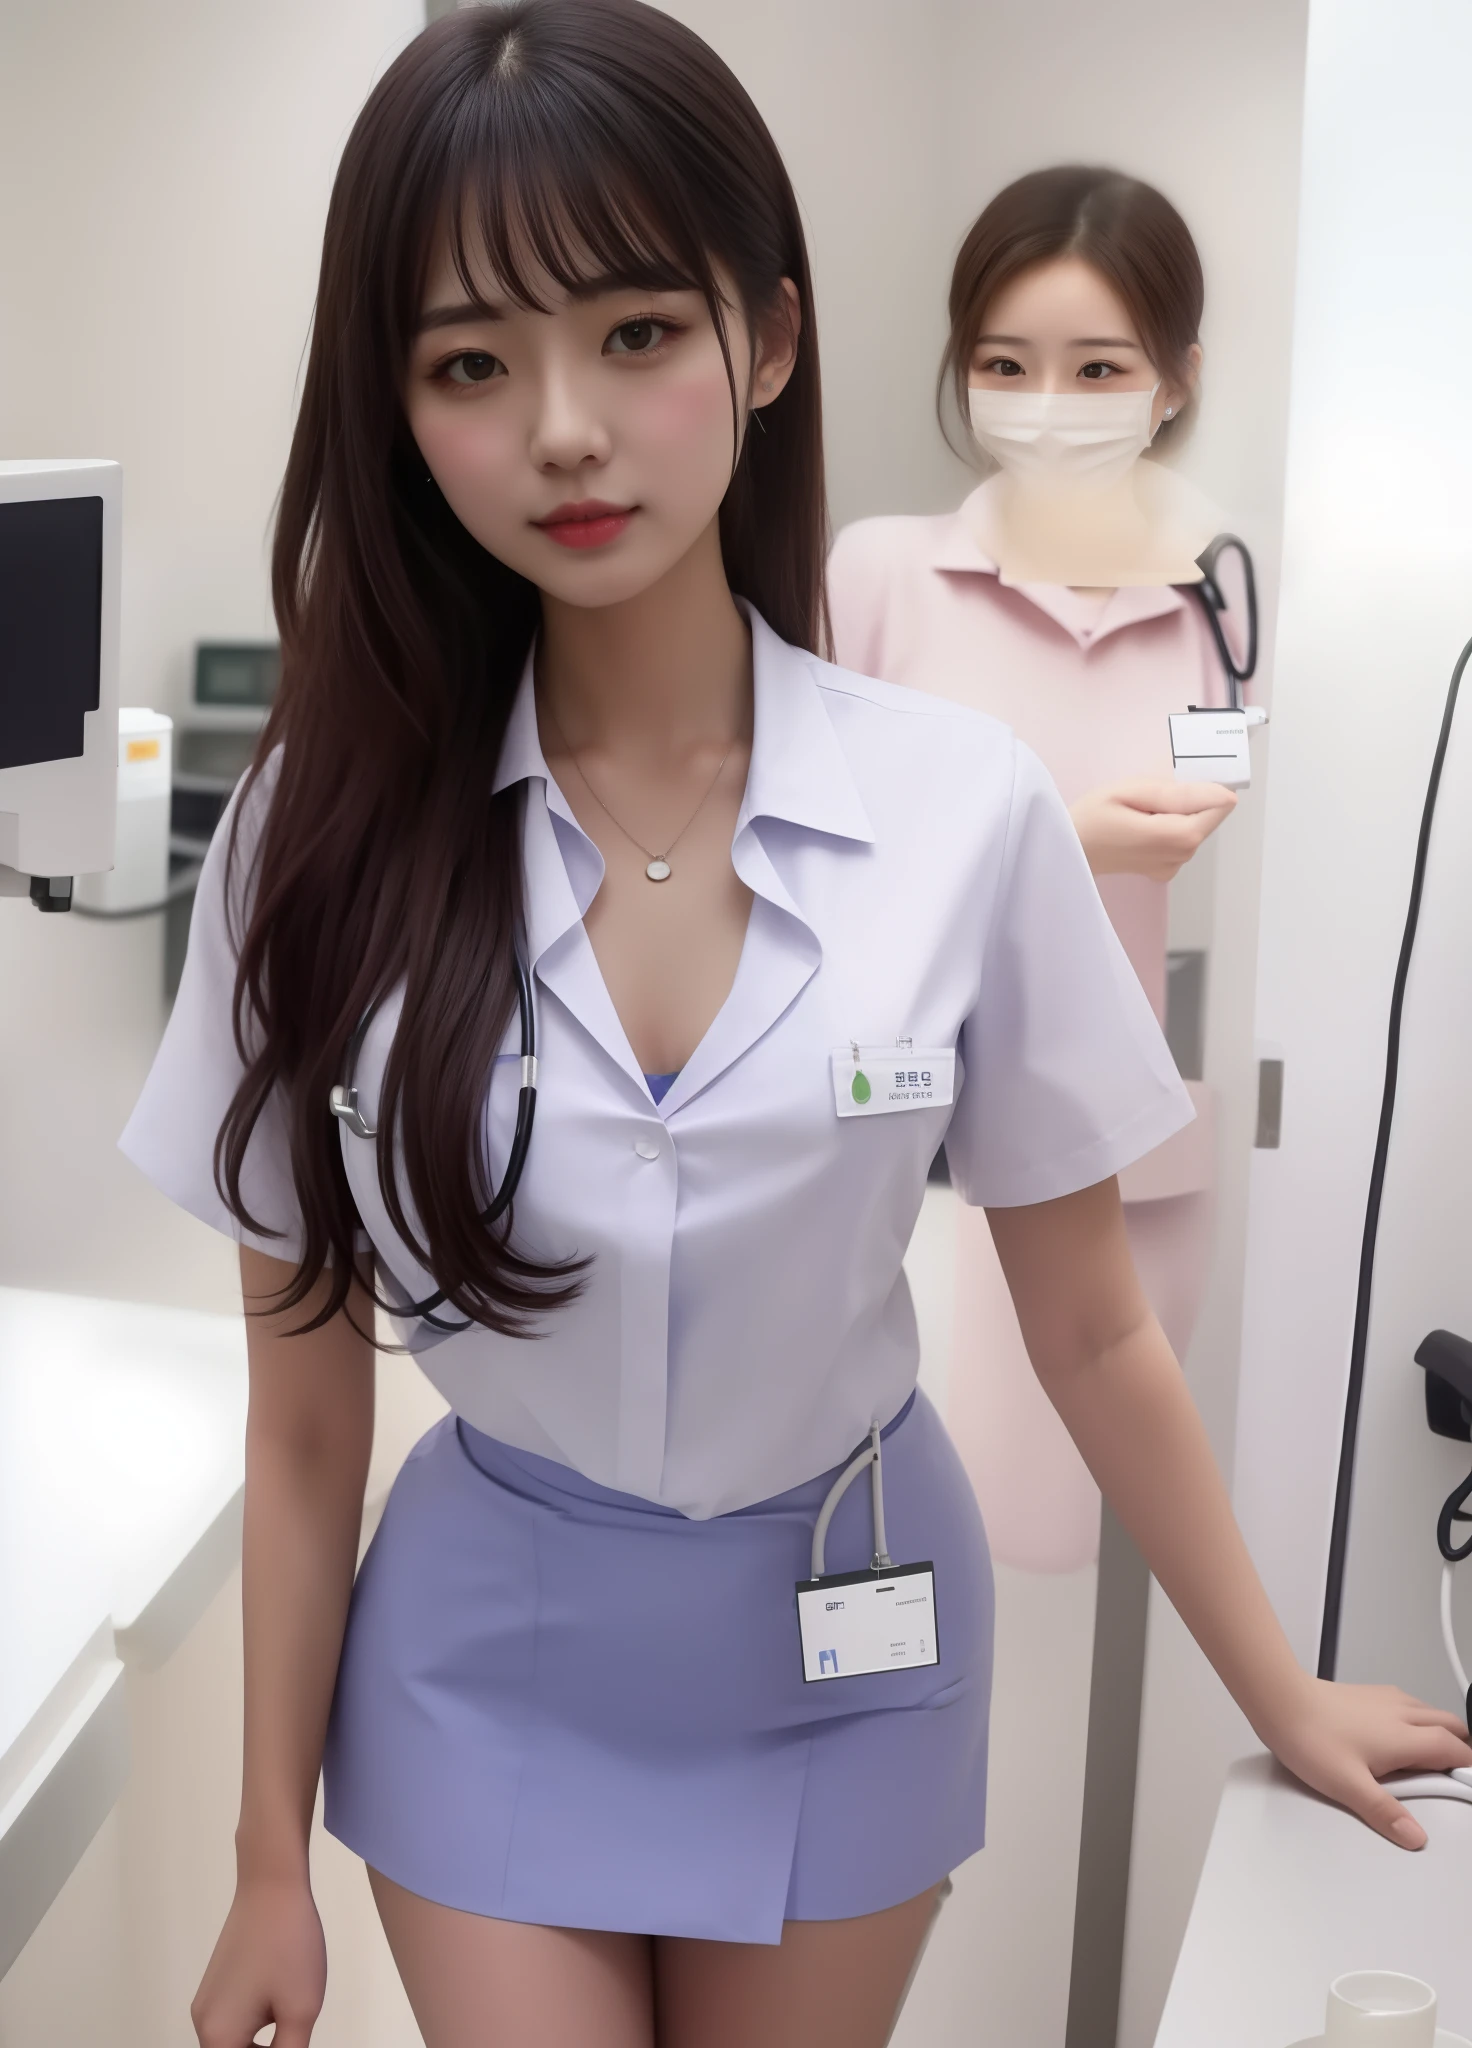 Gesundheitspfleger, Krankenschwester Mädchen, perfekte schlanke Figur，schönes Gesicht，Ganzkörperfoto